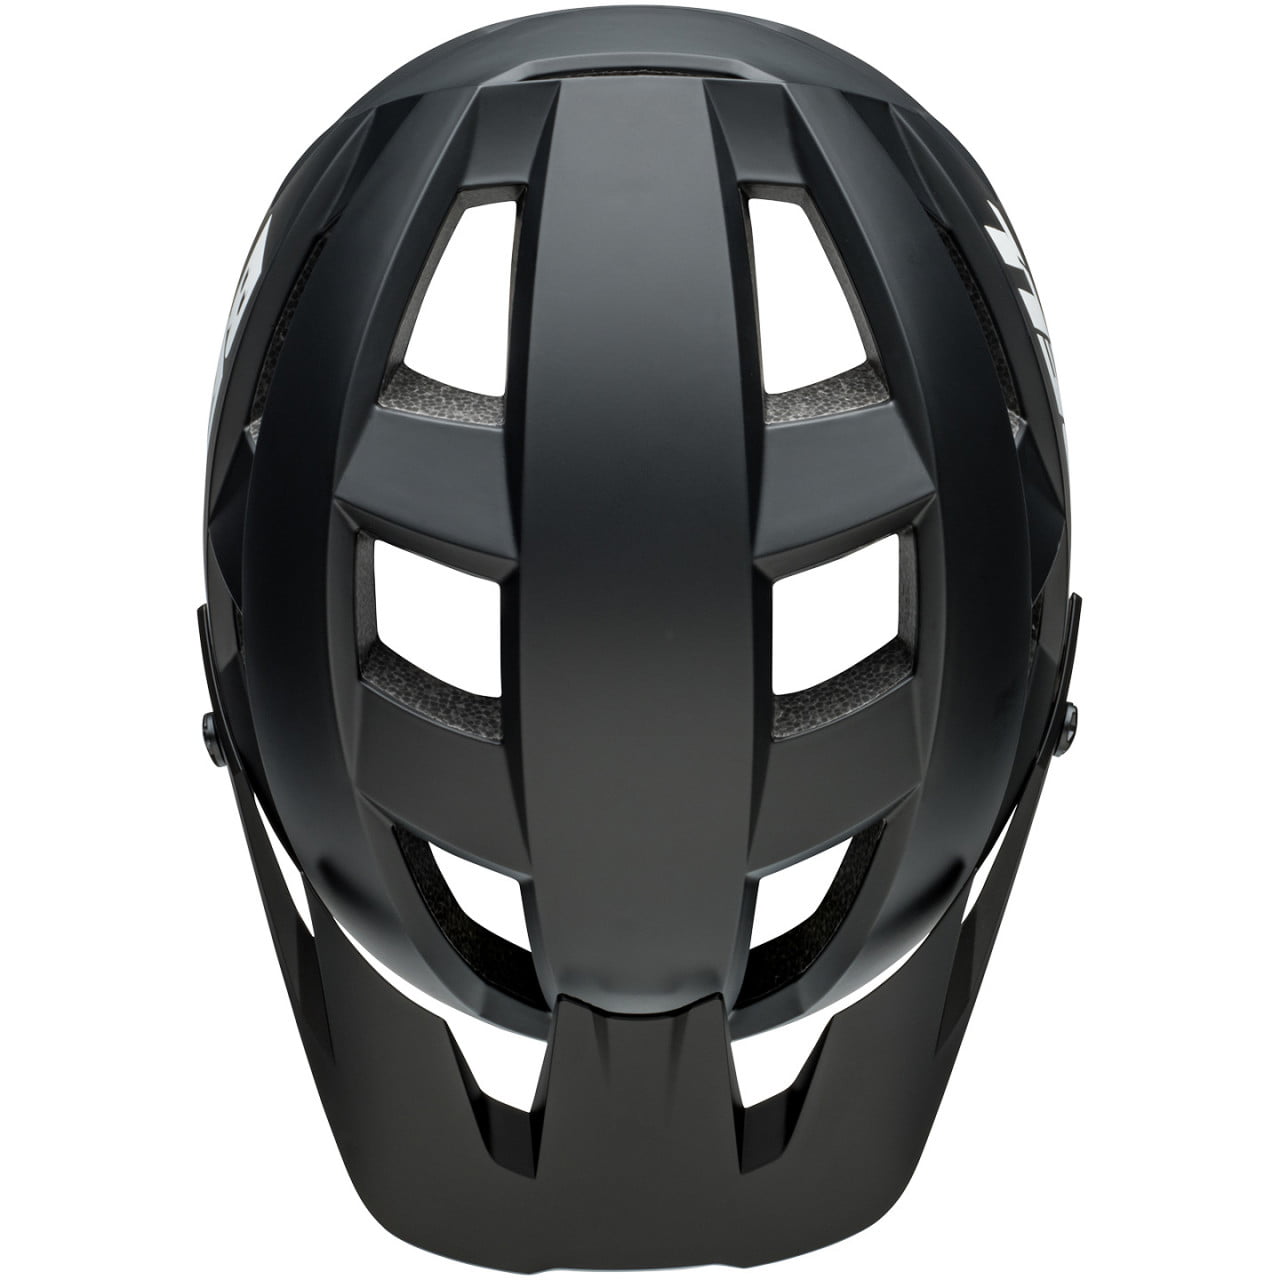 Sparks II Mips 2022 MTB Helmet